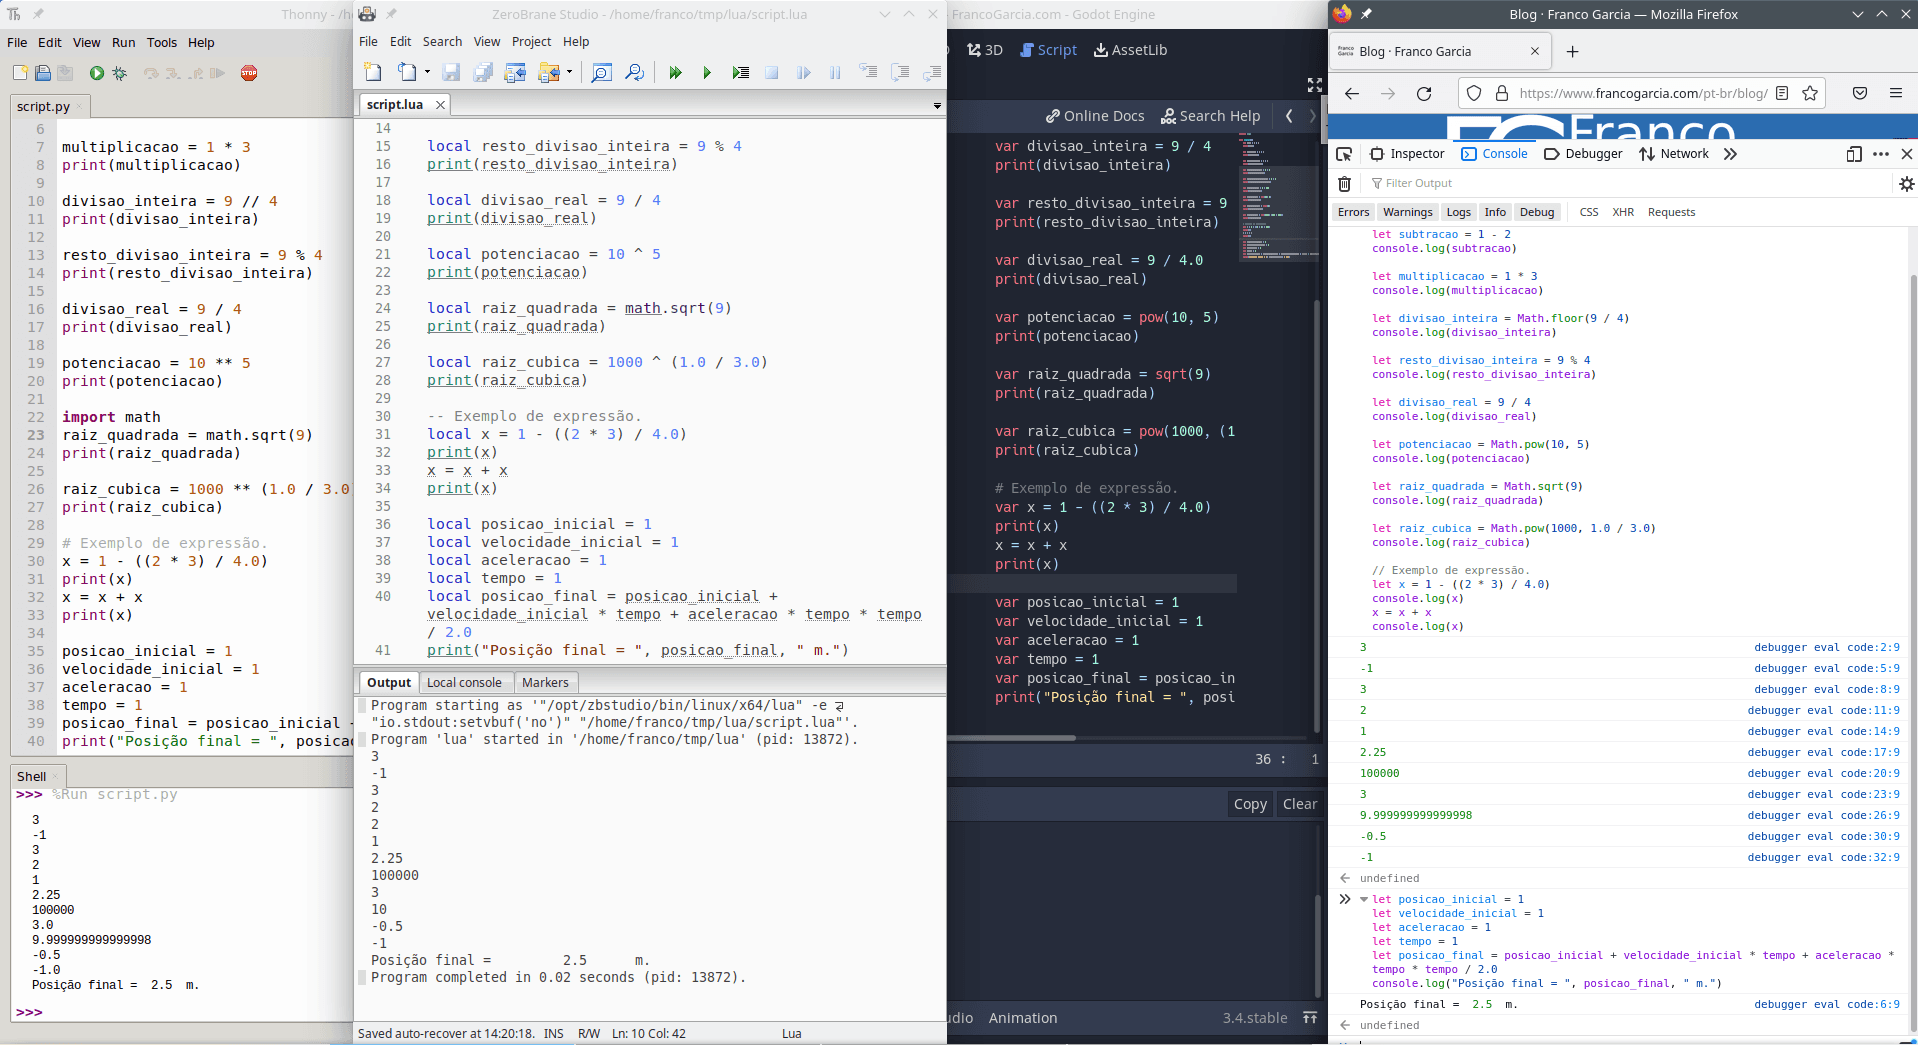 Exemplos de trechos de código em Python, Lua, GDScript e JavaScript com operações Matemáticas apresentados na página.